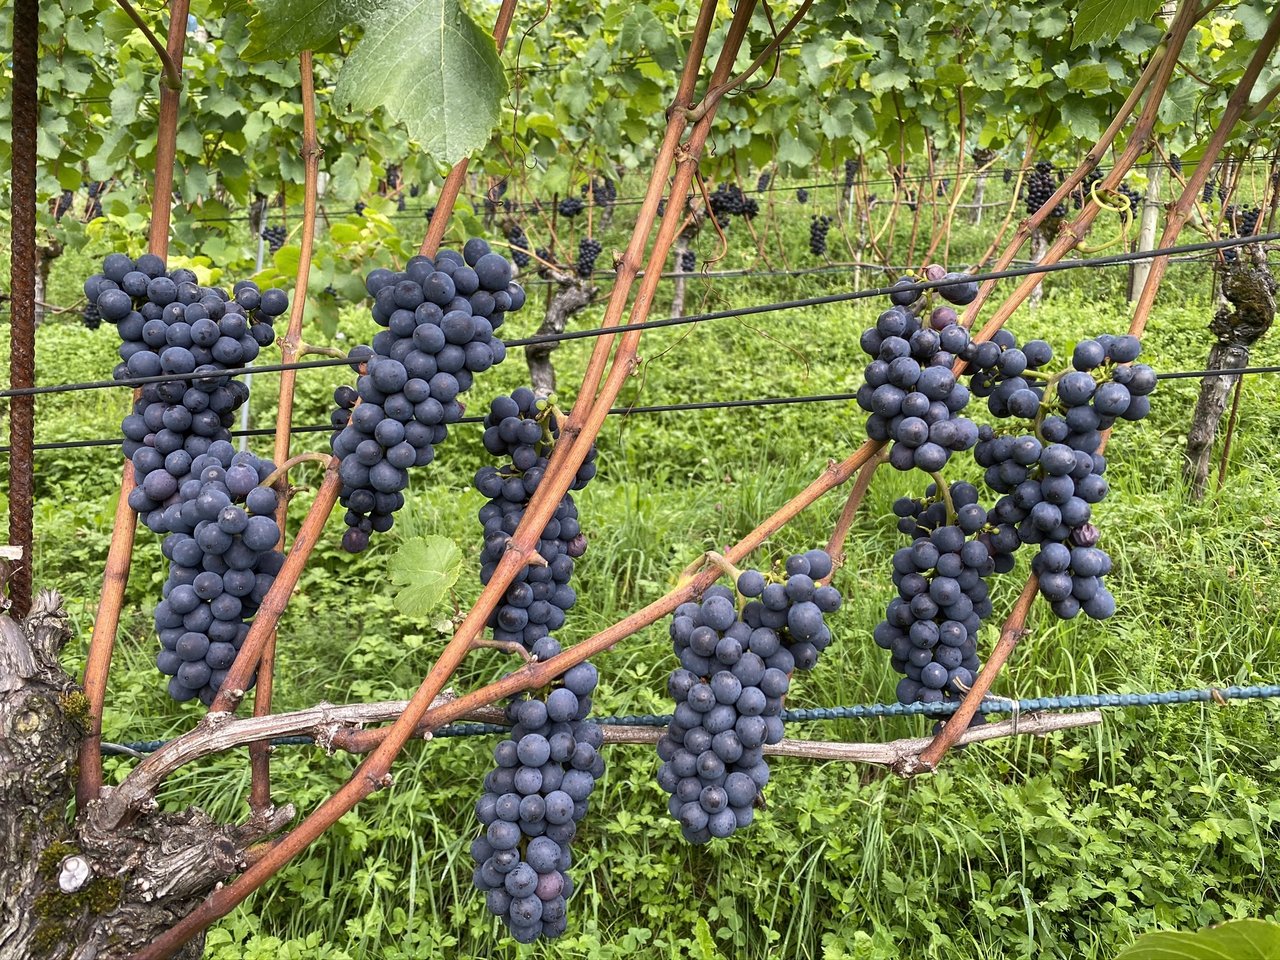 Prächtige Pinot-Trauben kurz vor der Ernte.